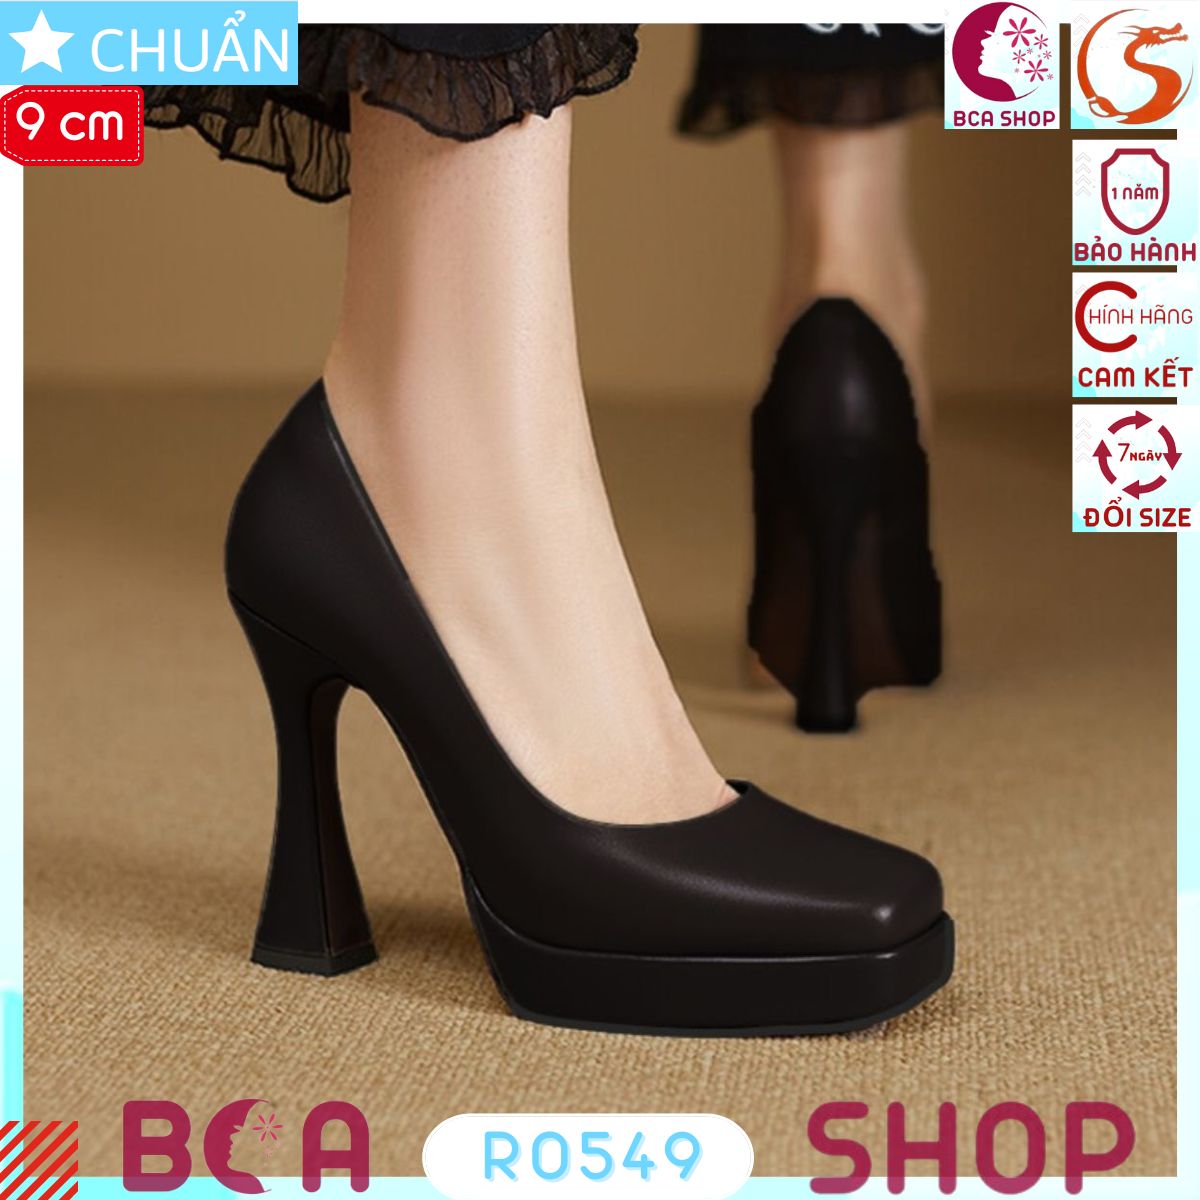 Giày cao gót nữ mũi vuông 9p RO549 ROSATA tại BCASHOP màu đen kiểu dáng đơn giản nhưng toát lên khí chất không lỗi thời